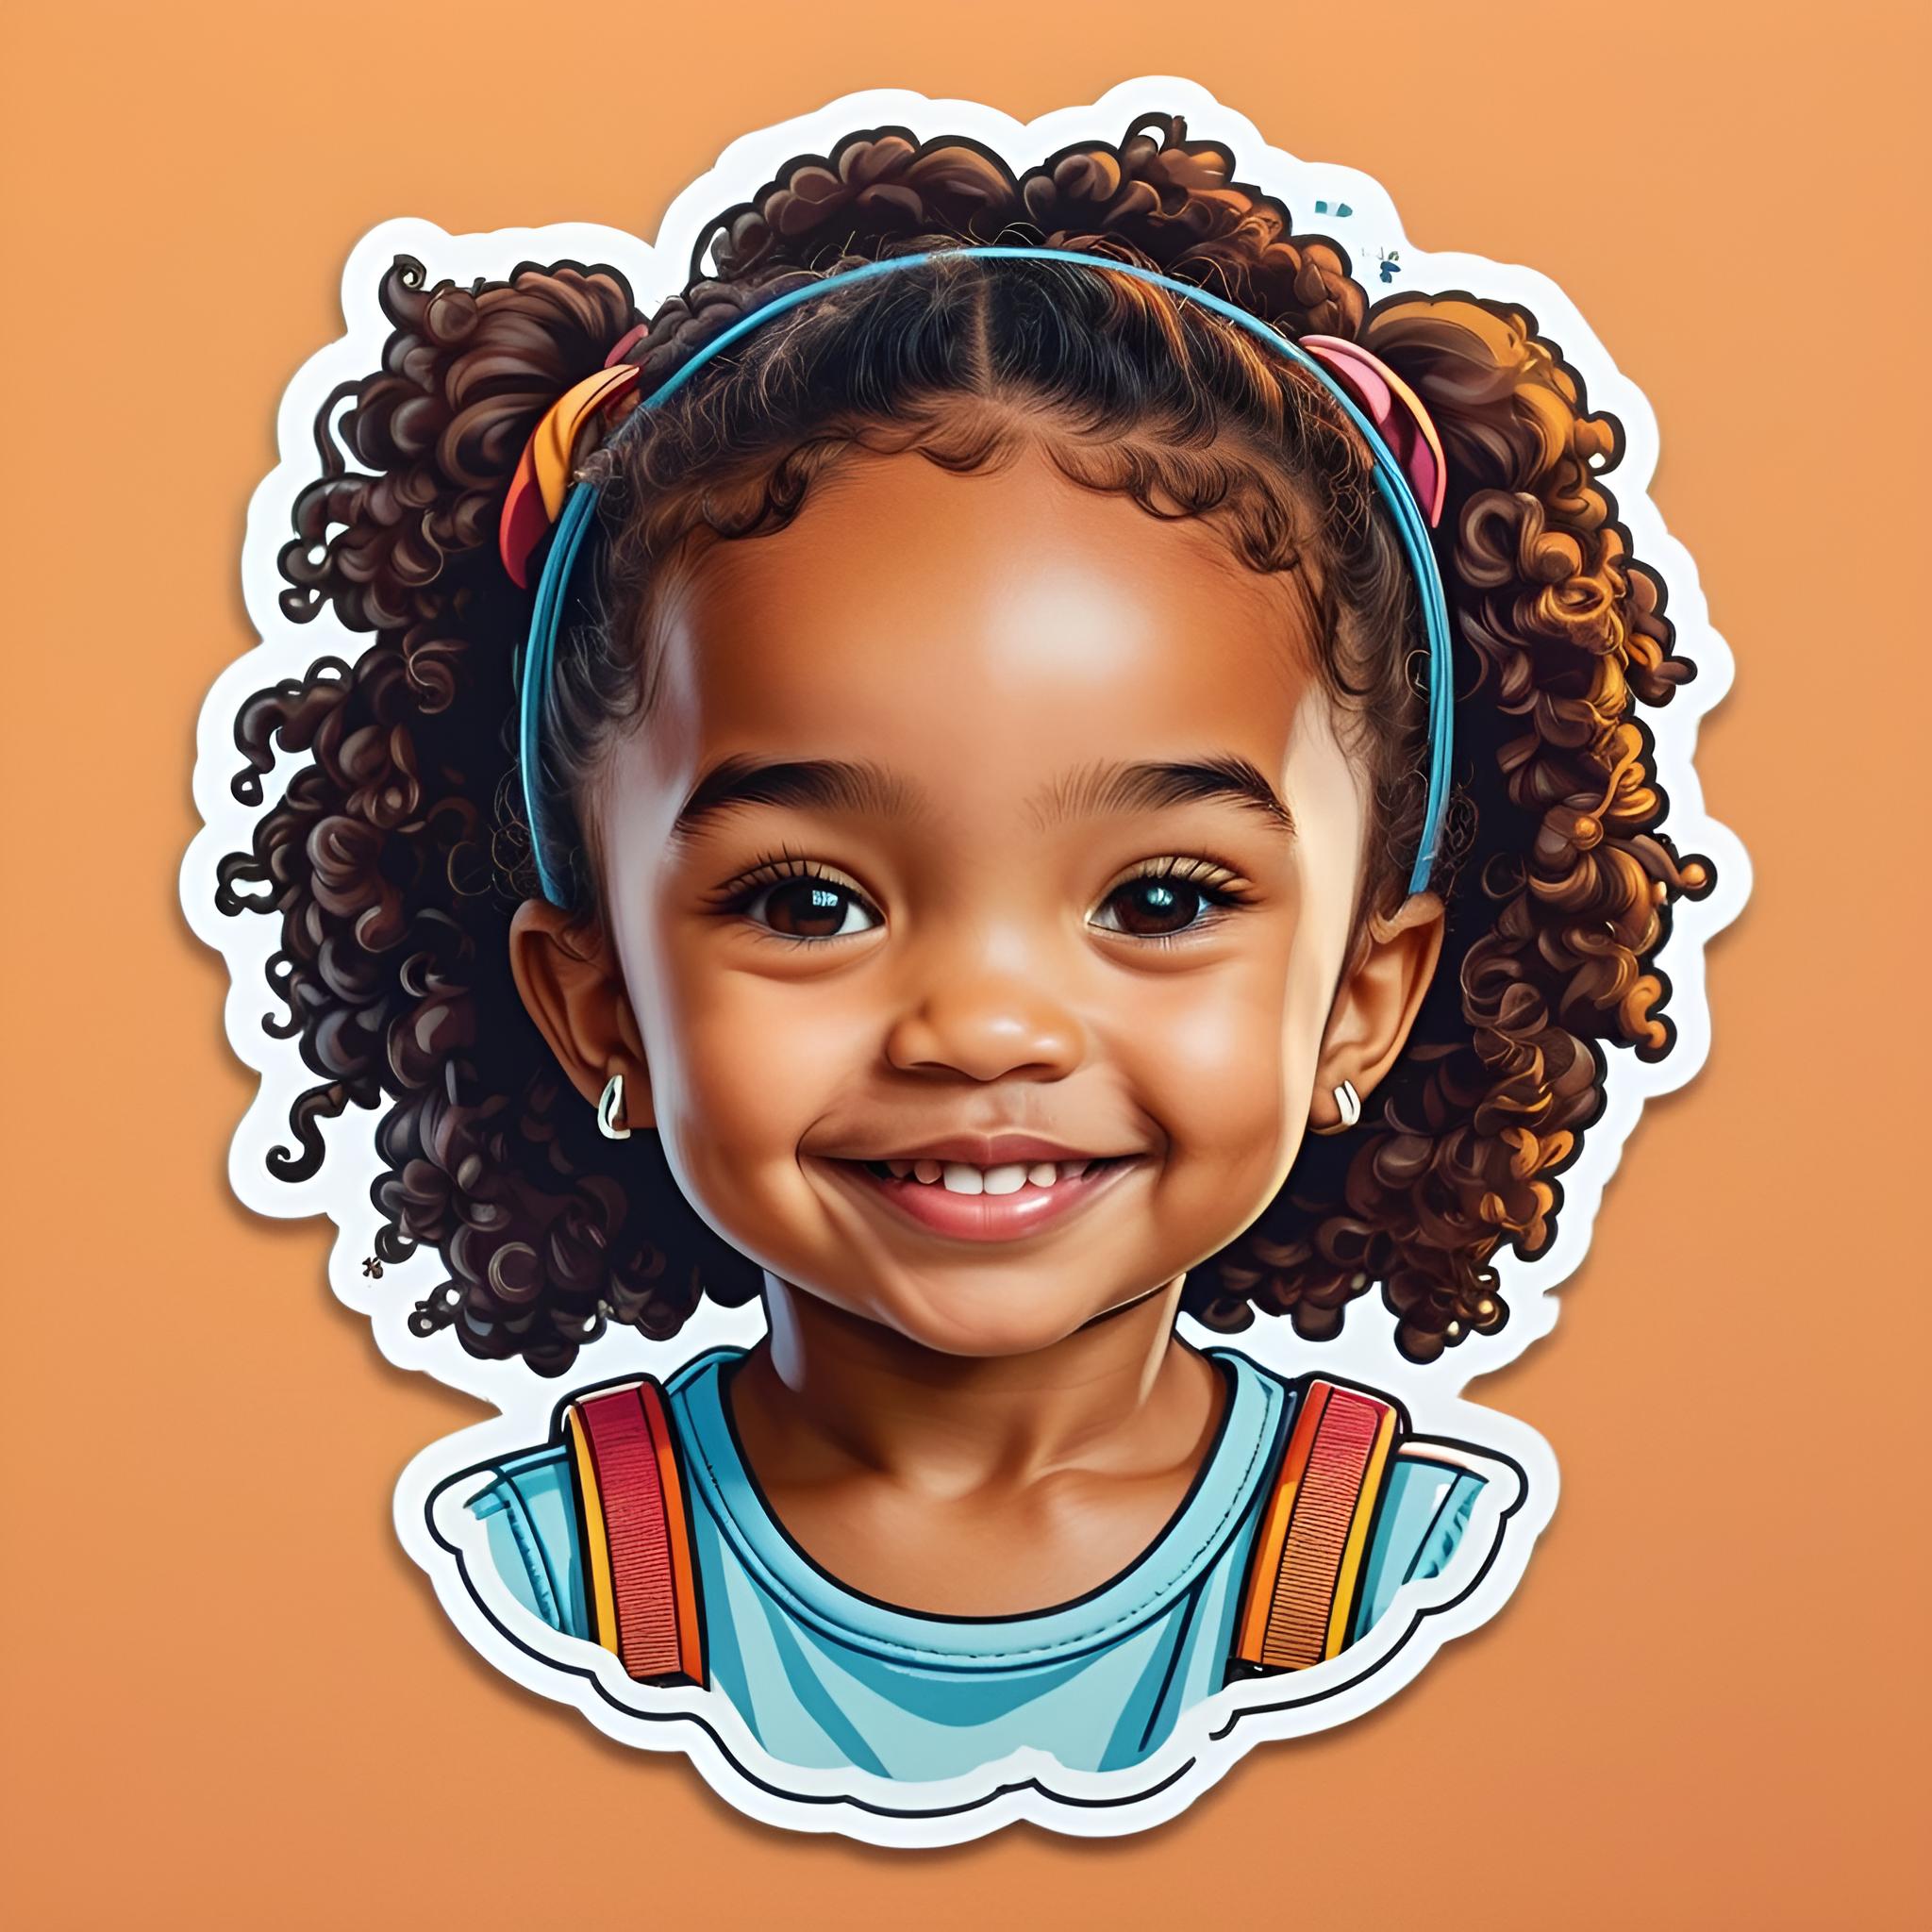 ai sticker of a little girl